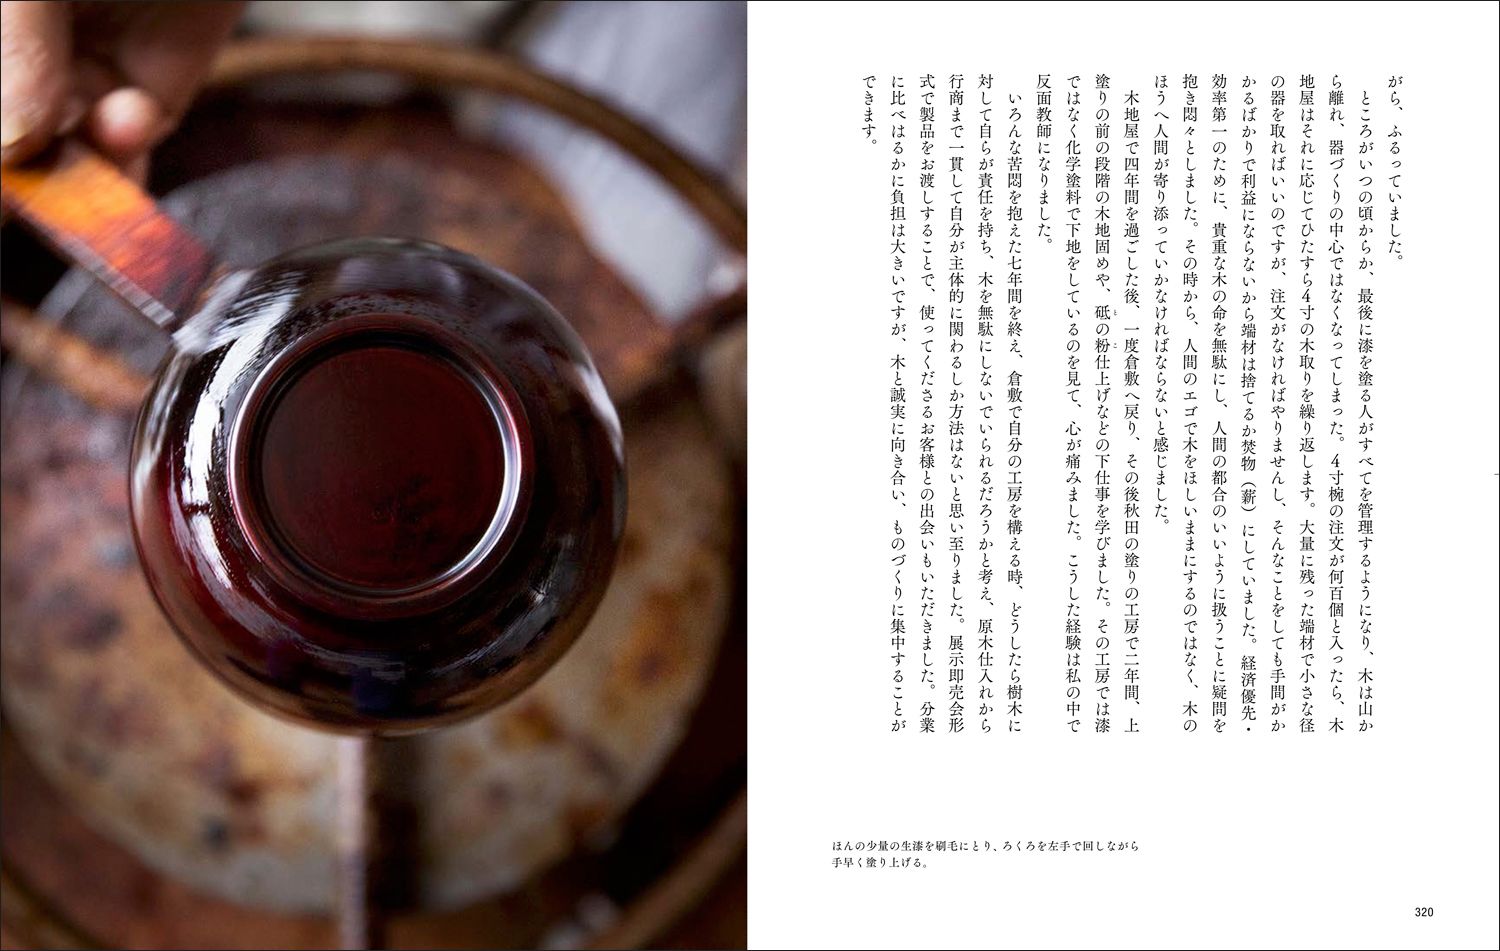 エルメス財団の新刊本で日本人の身近な素材「木」について知る